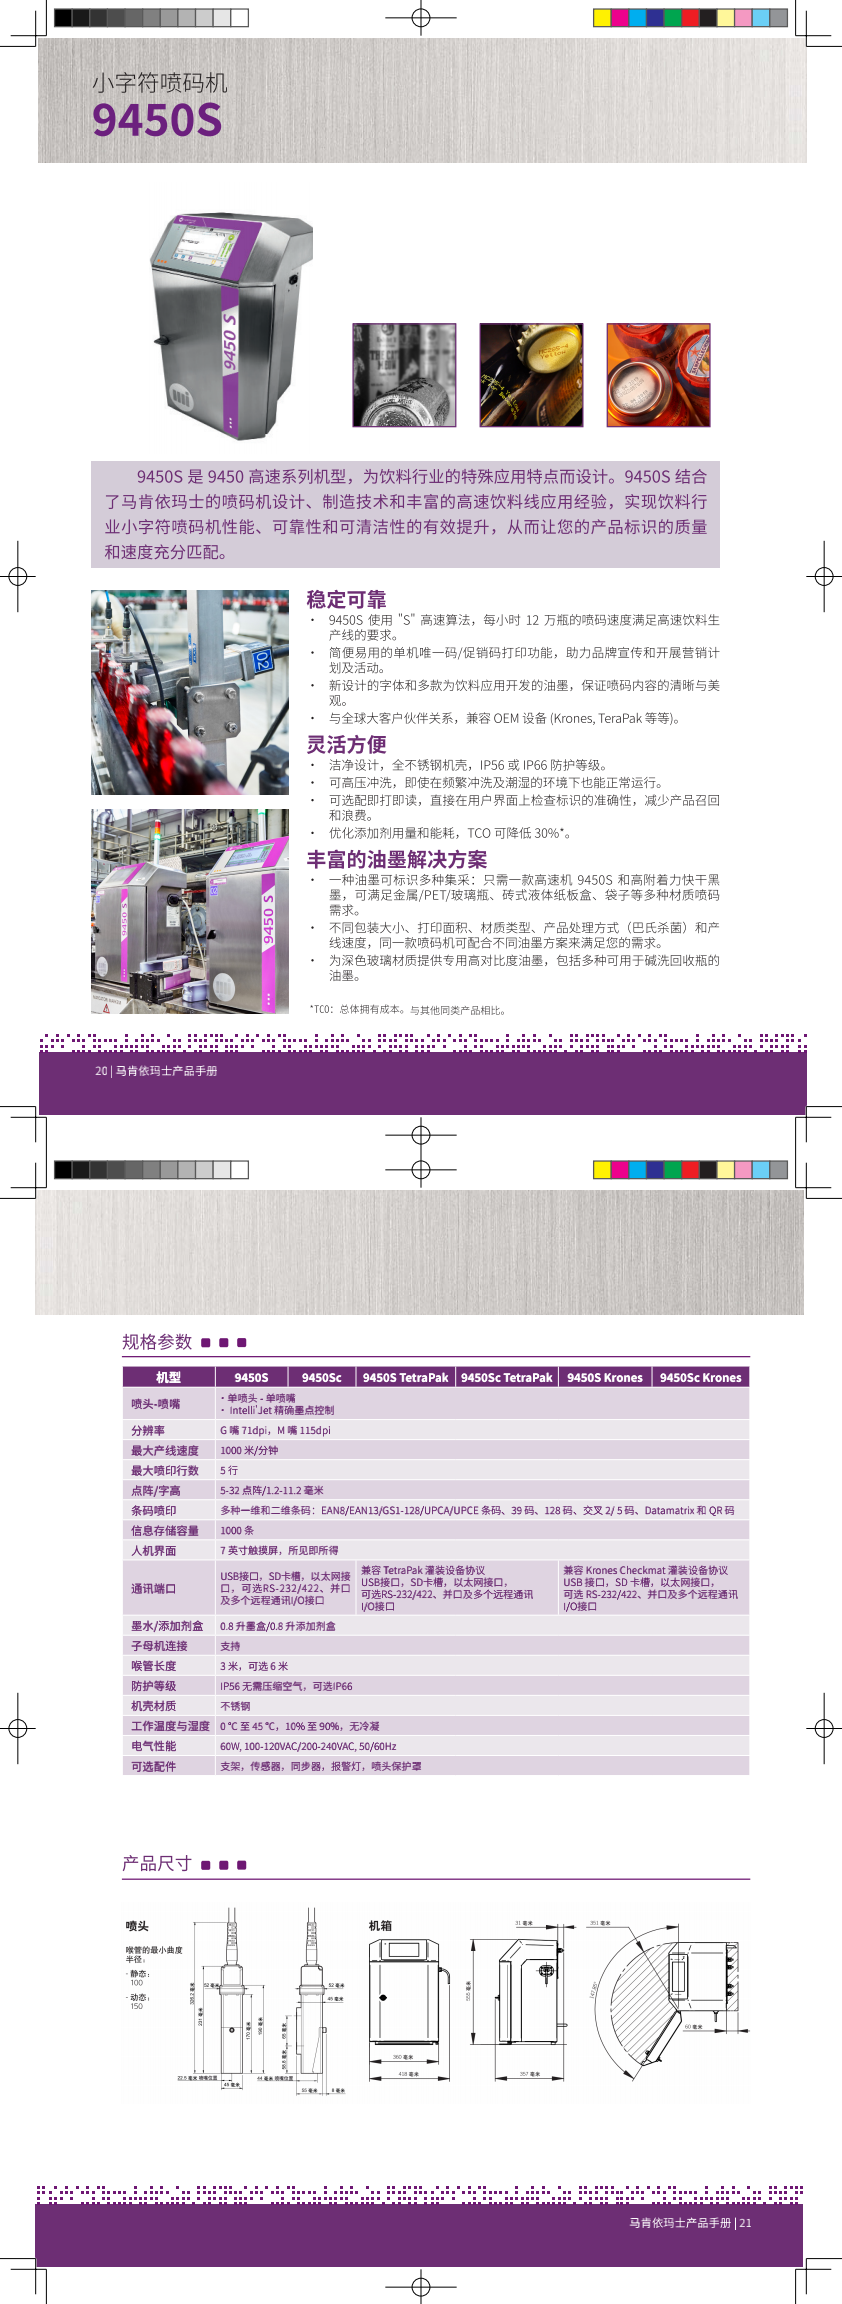 马肯依玛士产品手册V2-印刷版.png